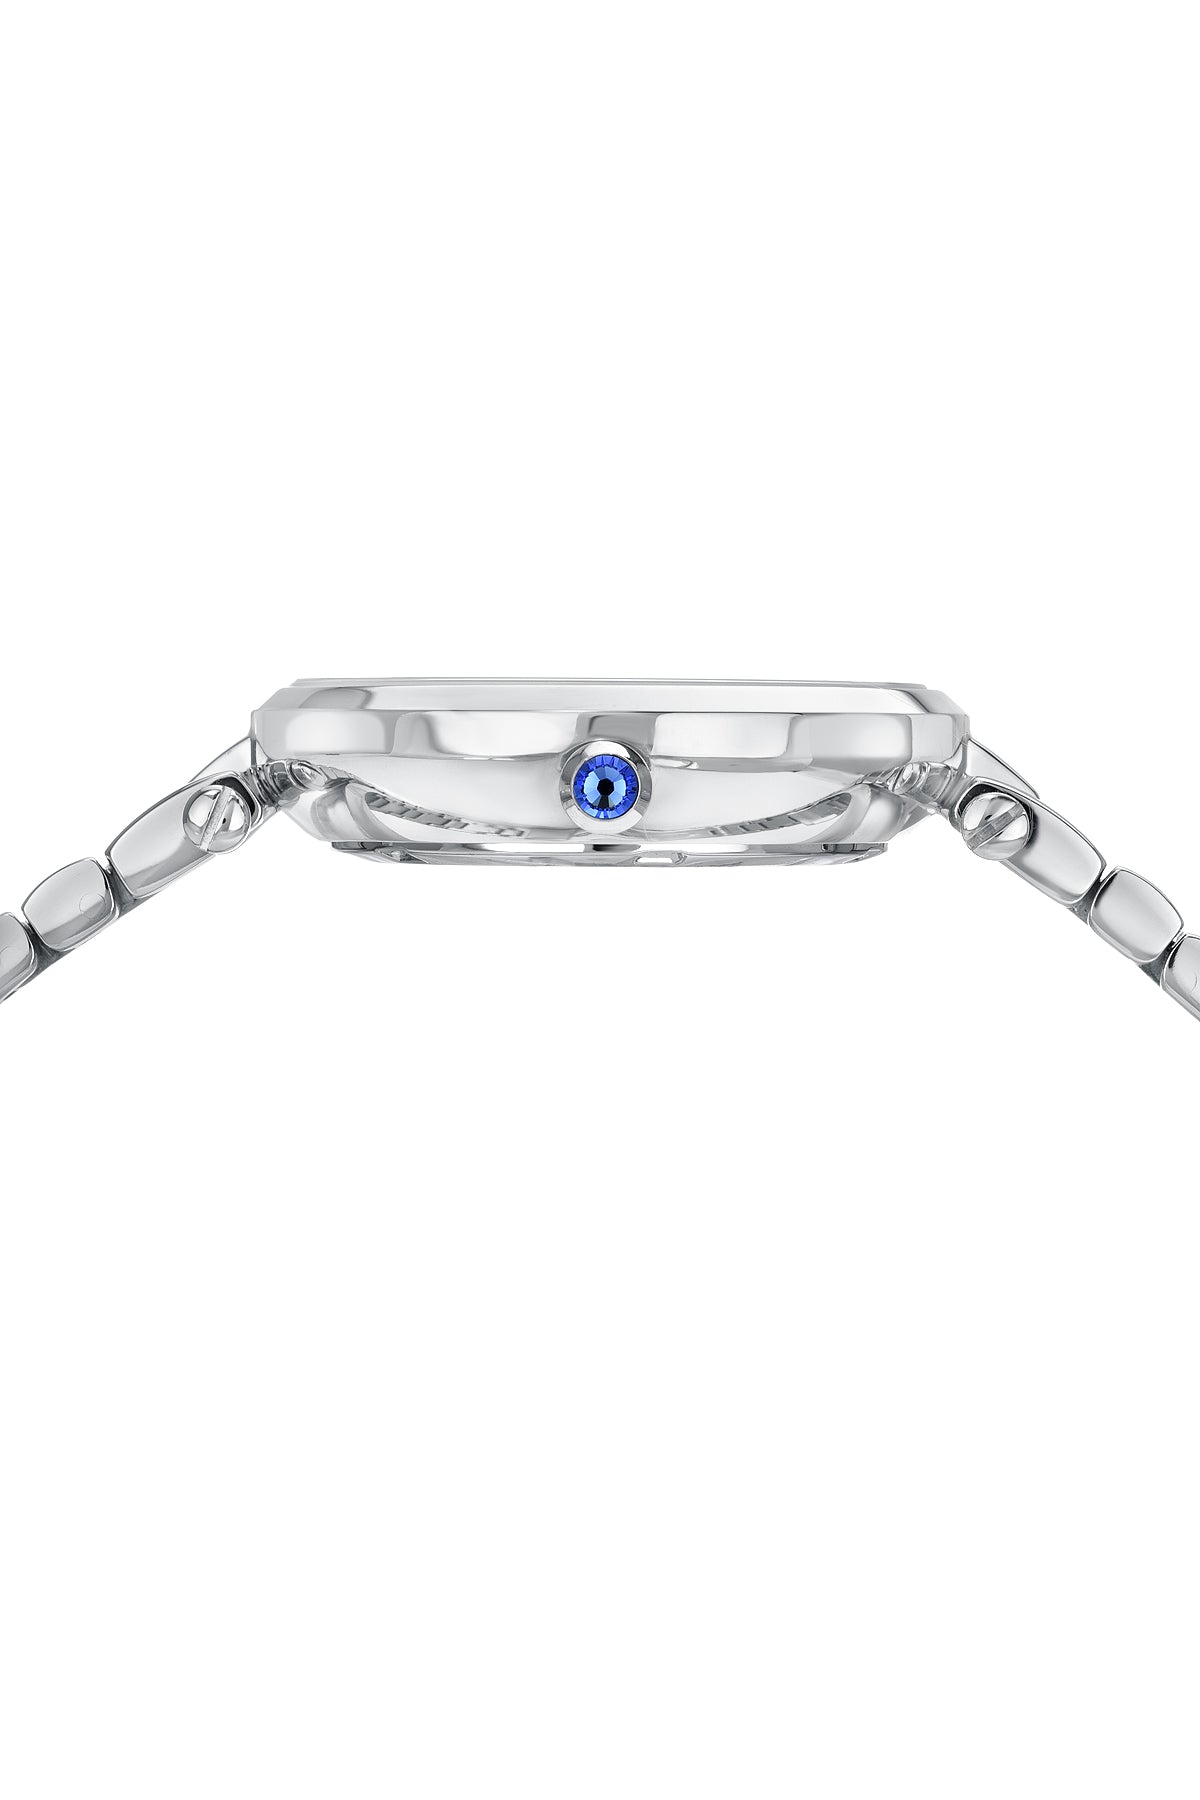 Porsamo Bleu Lilian Luxury Topaz Women's Stainless Steel Watch, Silver, Pink 1062ALIS